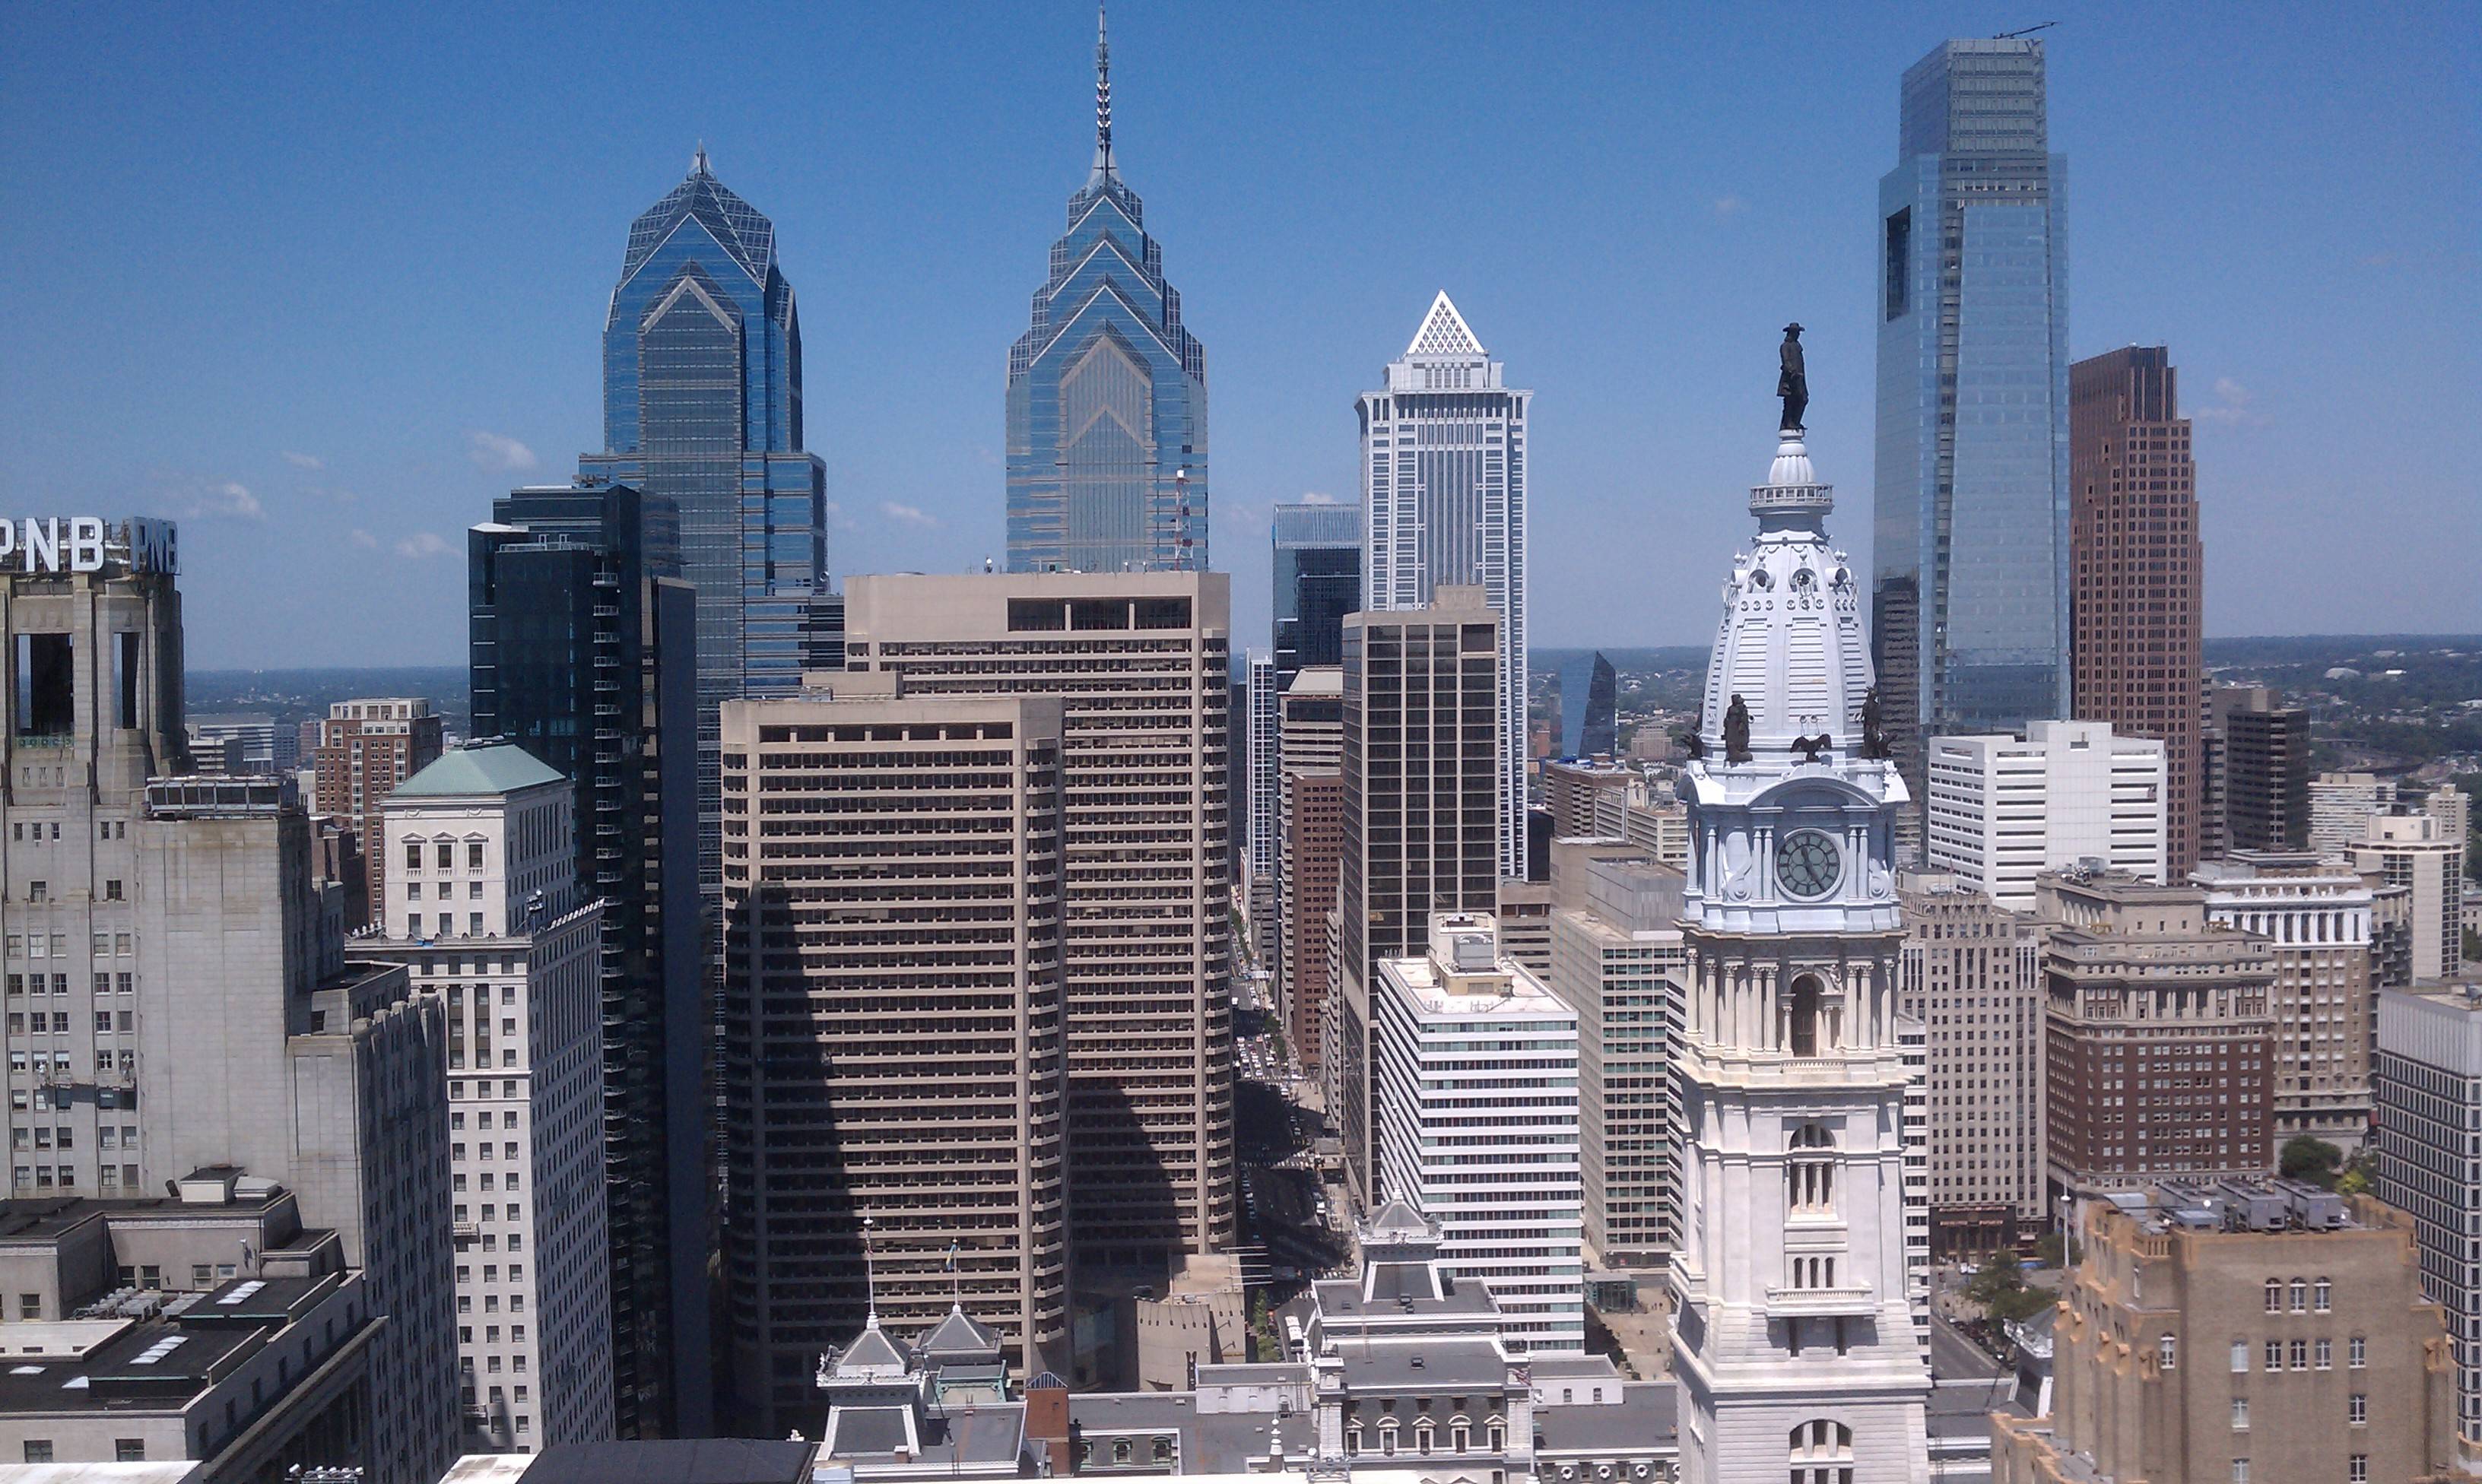 Philadelphia Skyline Wallpaper